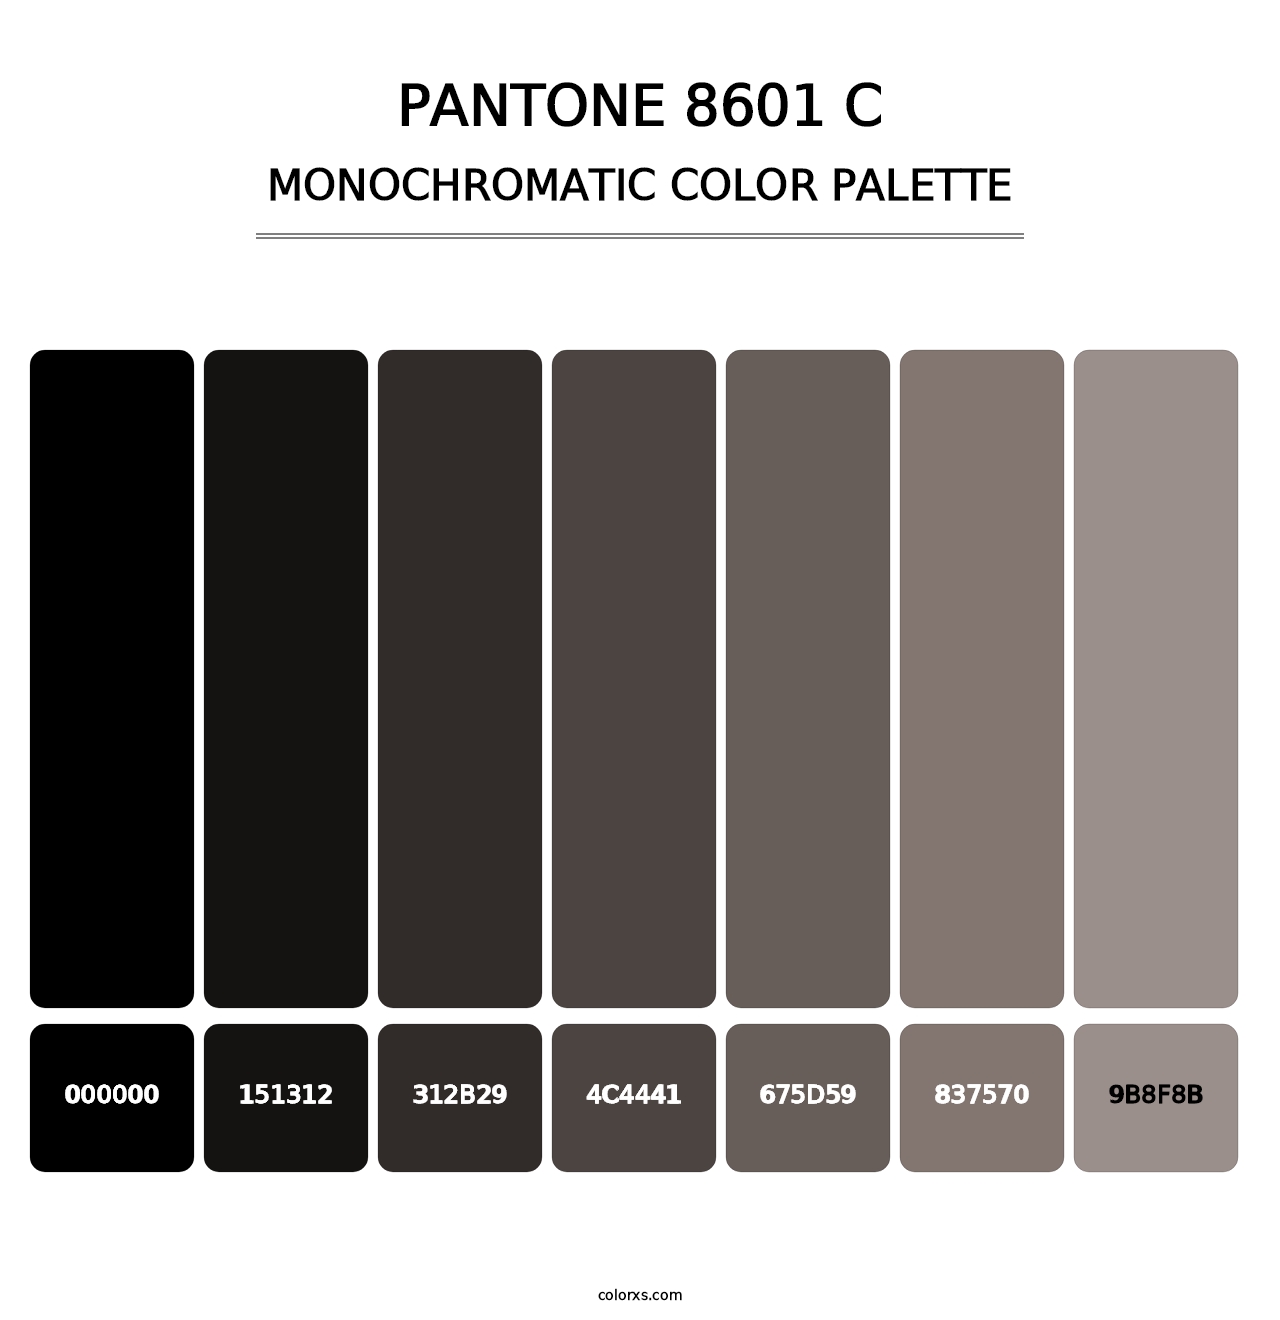 PANTONE 8601 C - Monochromatic Color Palette